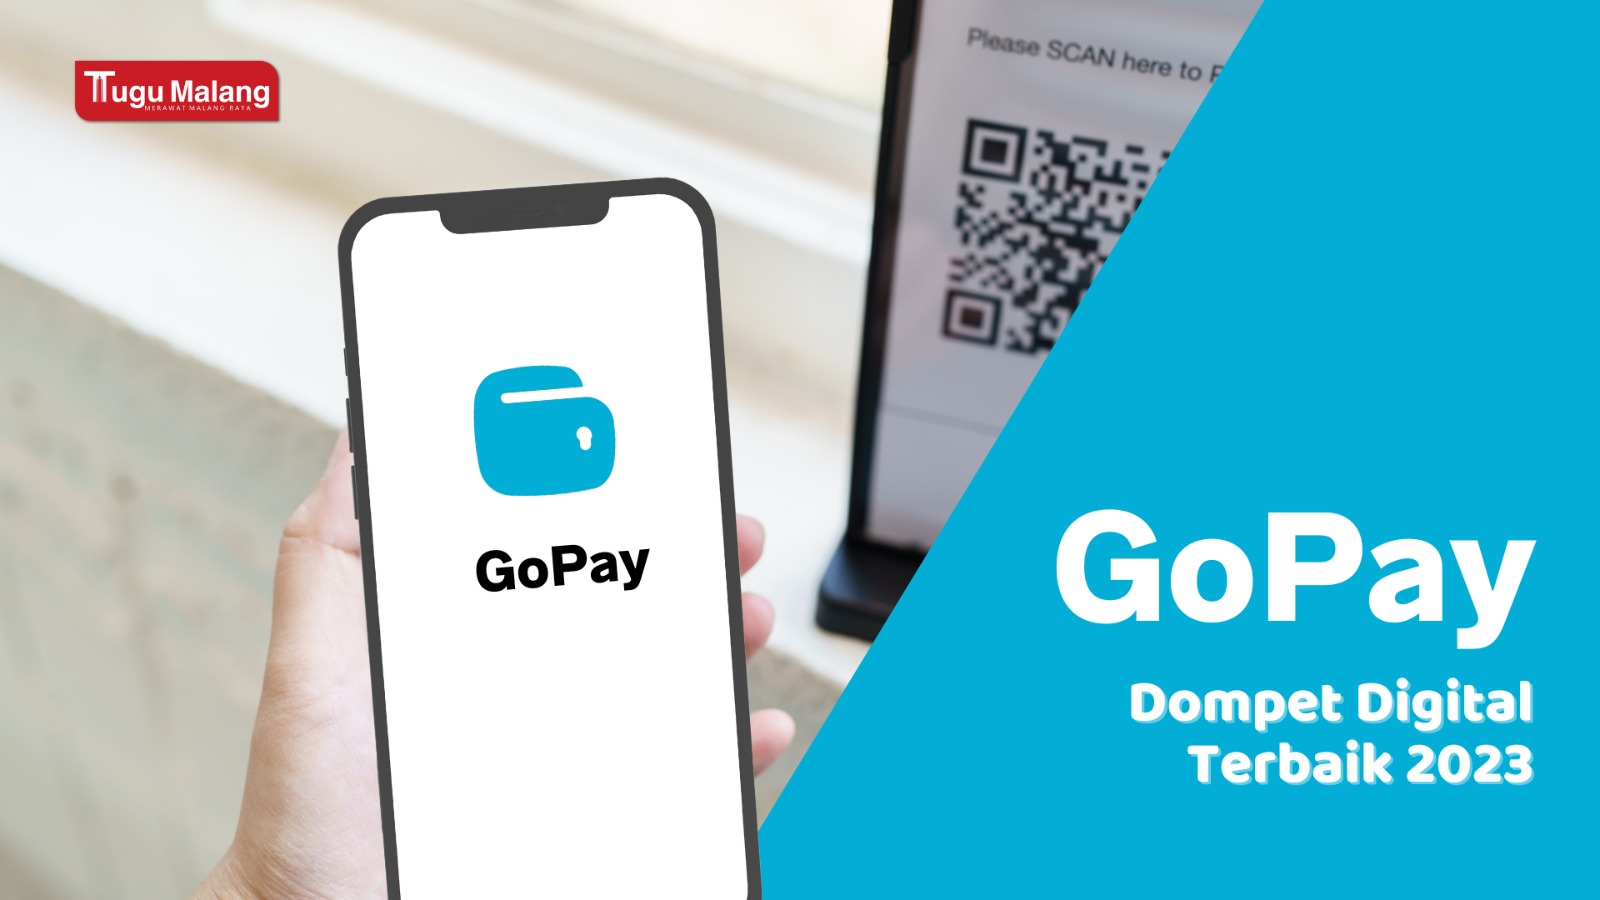 Dompet digital GoPay jadi platform dengan pengguna terbanyak.